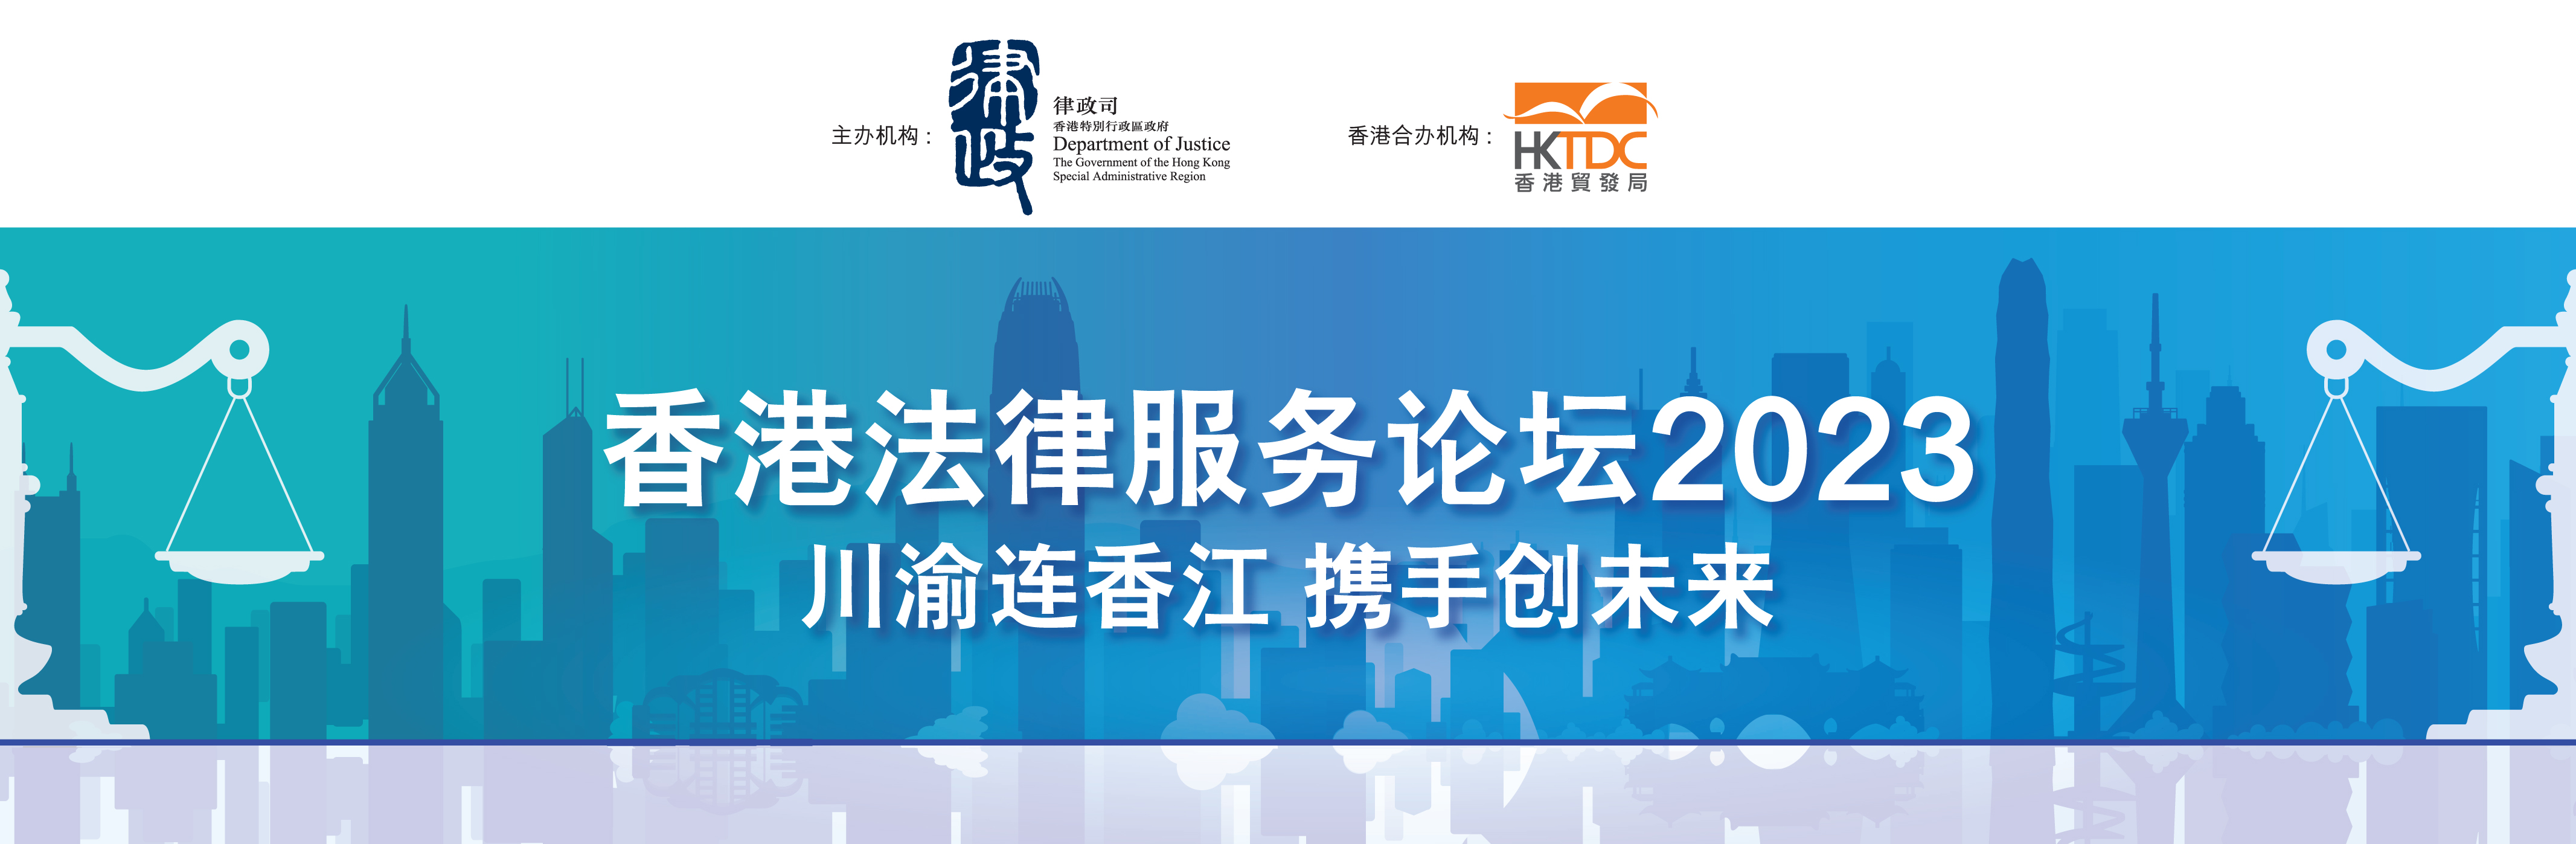 迈向全球 首选香港 | Hong Kong Legal Services Forum - Guangzhou